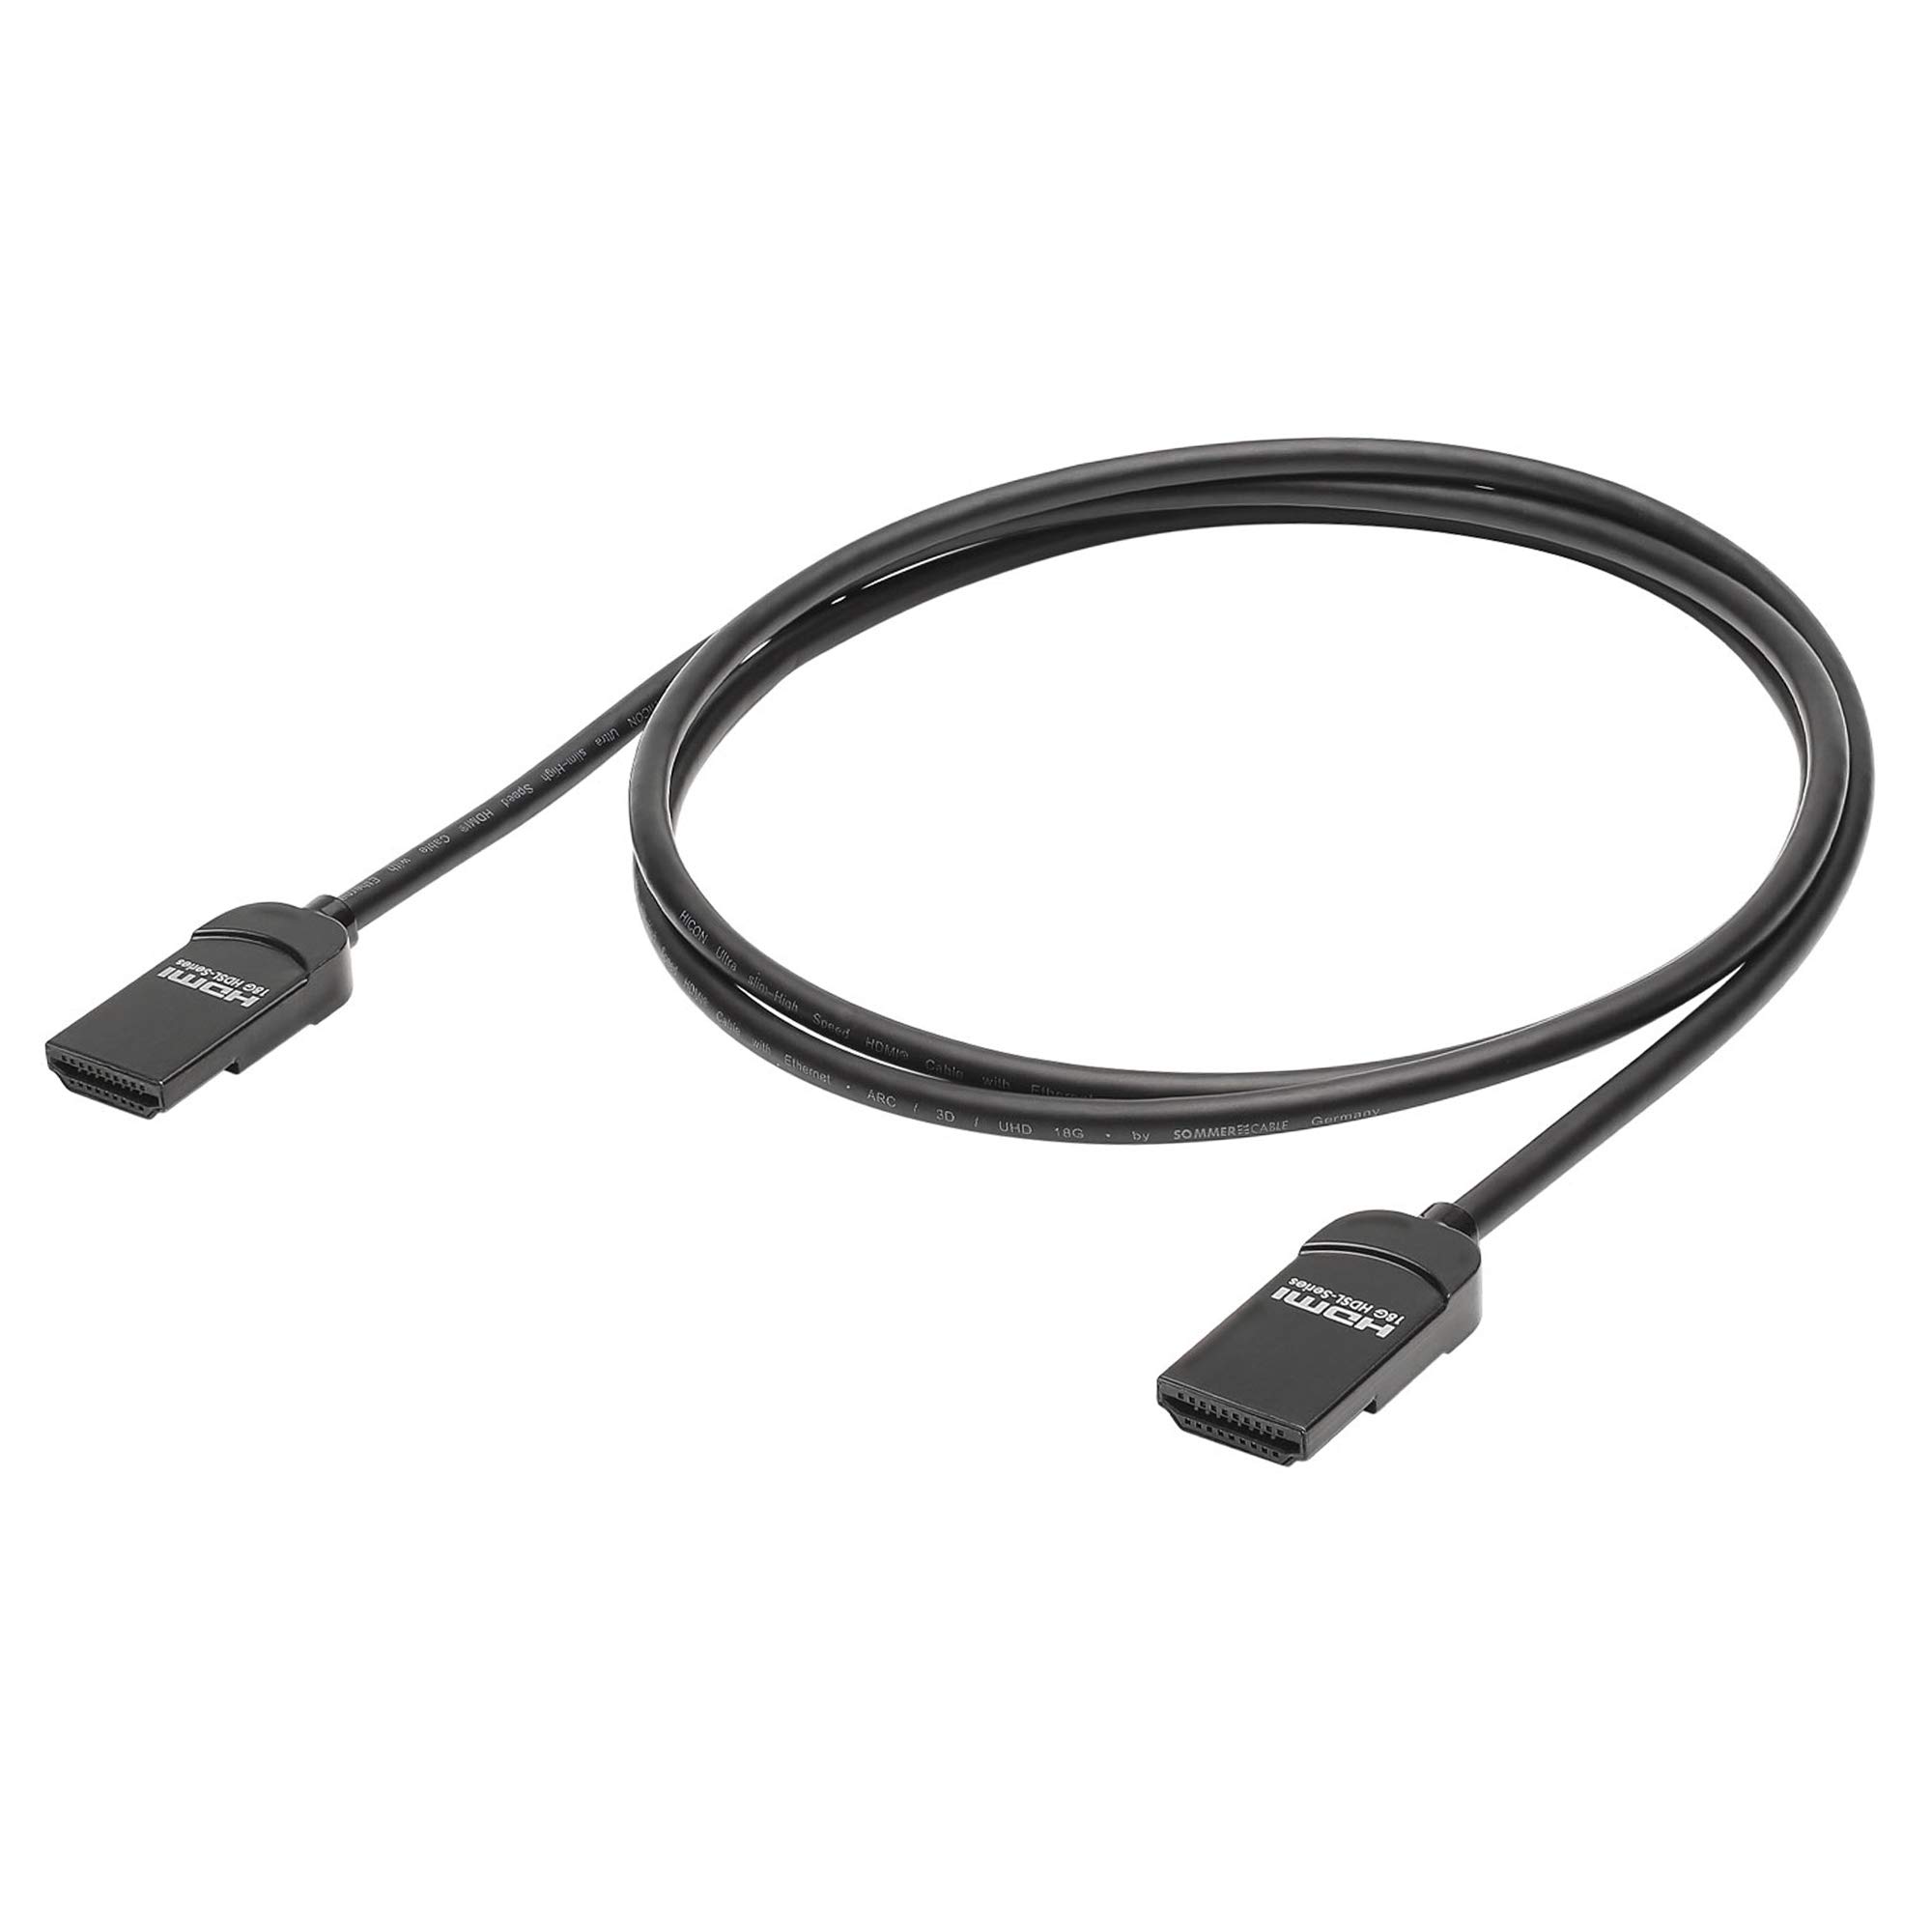 Hicon 75cm 18GBit/s HDMI-Kabel Ultra Slim Design 4K 60fps UHD 3D HDR 10 Premium HighSpeed mit Ethernet 0,75m flexibel kompakt leicht - HI-HDSL-0075